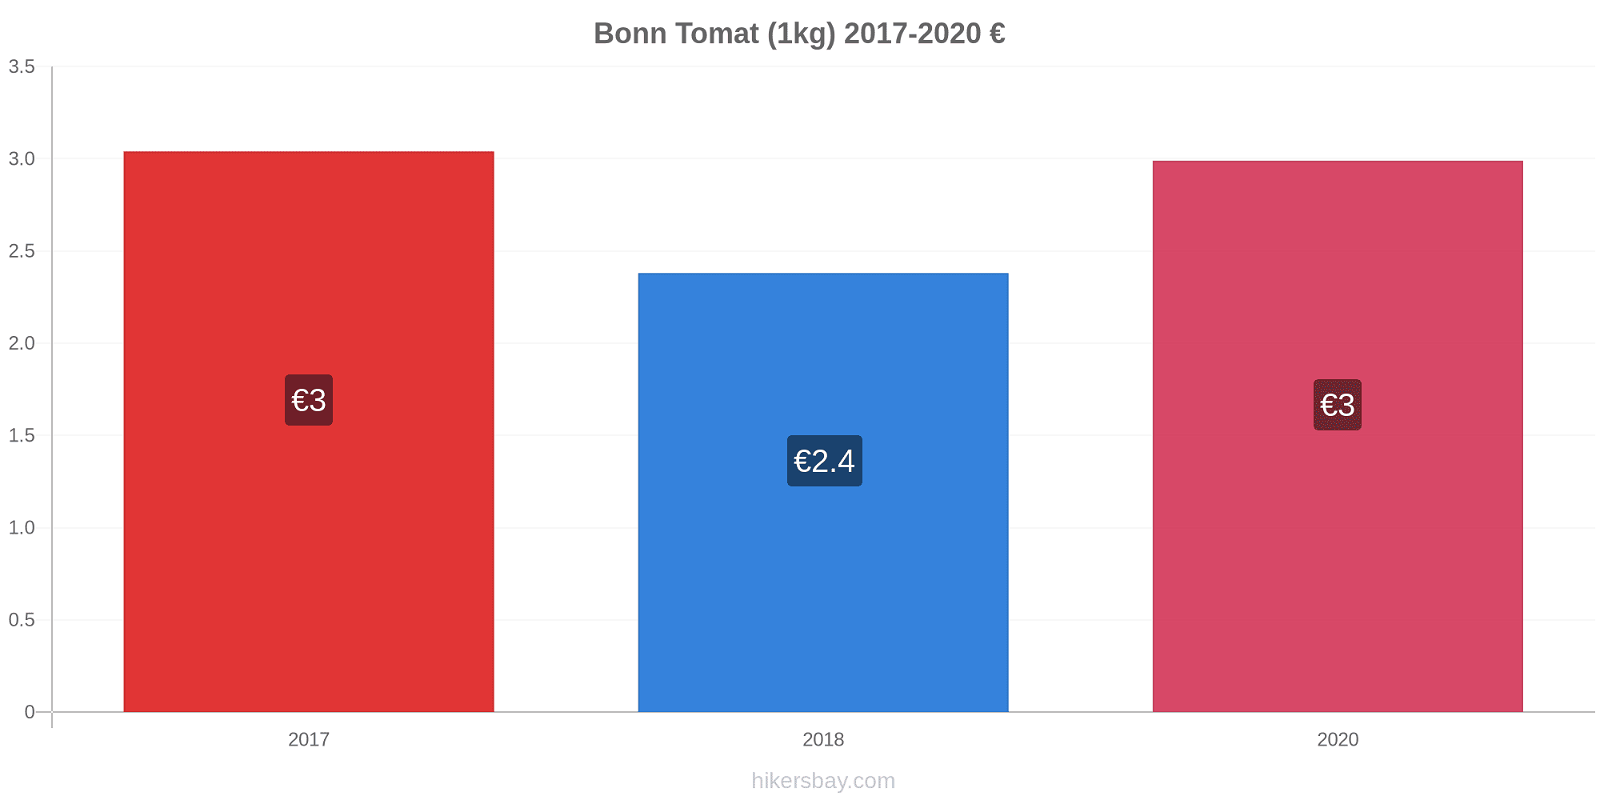 Bonn prisændringer Tomat (1kg) hikersbay.com